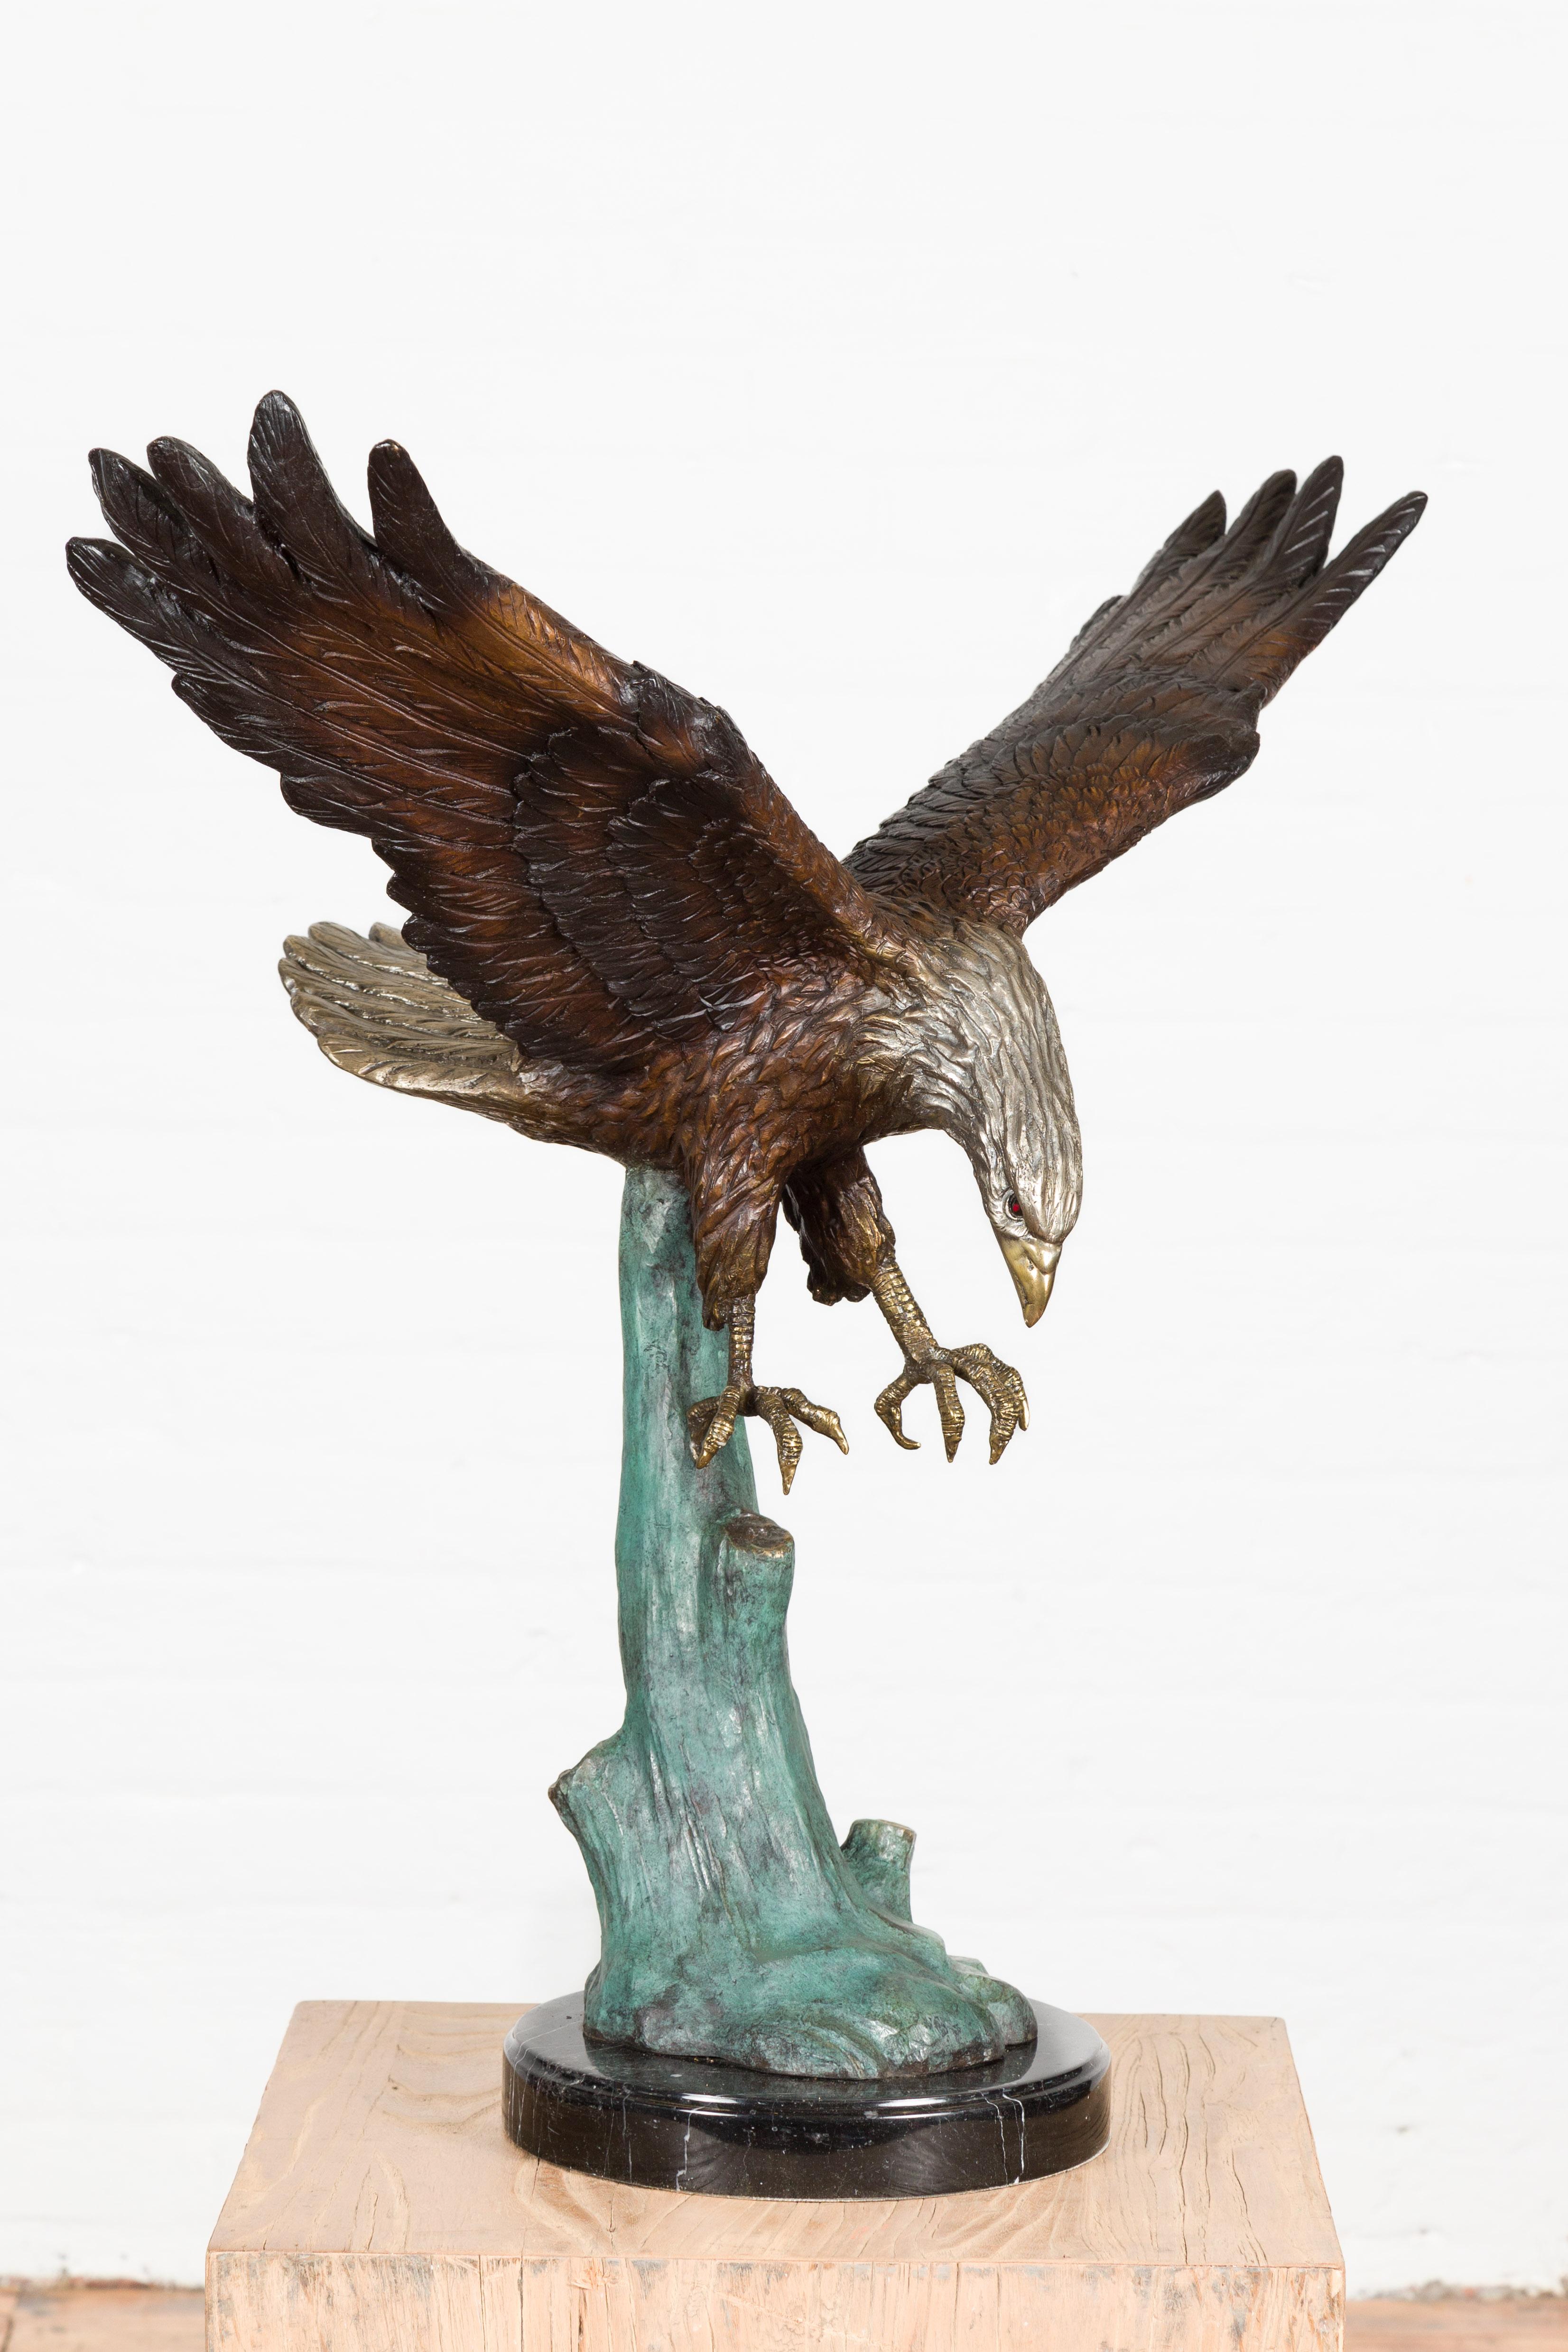 Skulptur aus Bronze im Wachsausschmelzverfahren mit der Darstellung eines springenden Adlers, der von einem Baum abhebt, auf schwarzem Marmorsockel. Dieser Artikel ist ab sofort erhältlich und es handelt sich ebenfalls um eine aktuelle Produktion.